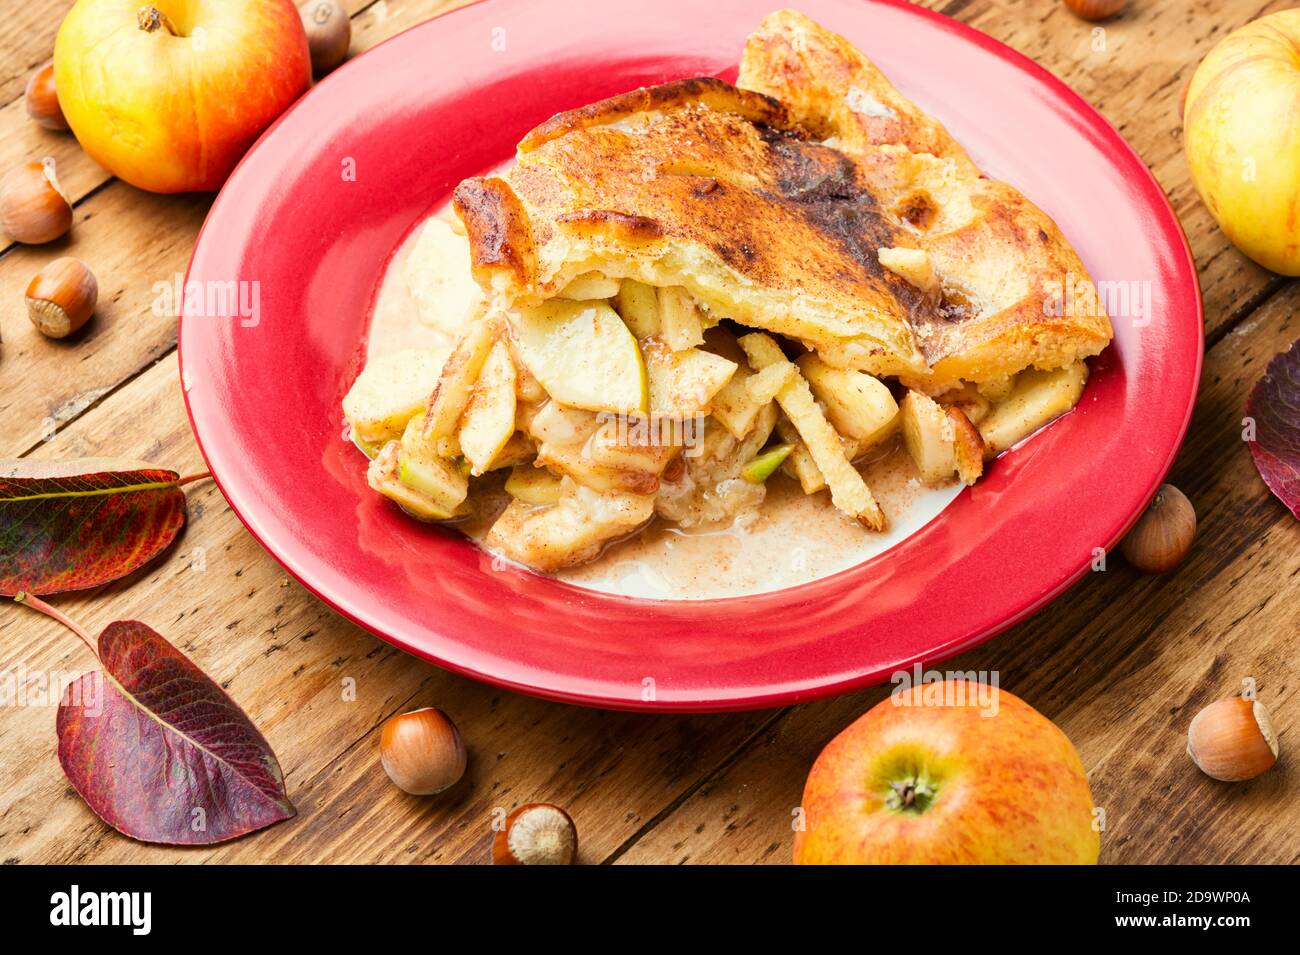 Tasty sweet apple pie on wooden table Stock Photo